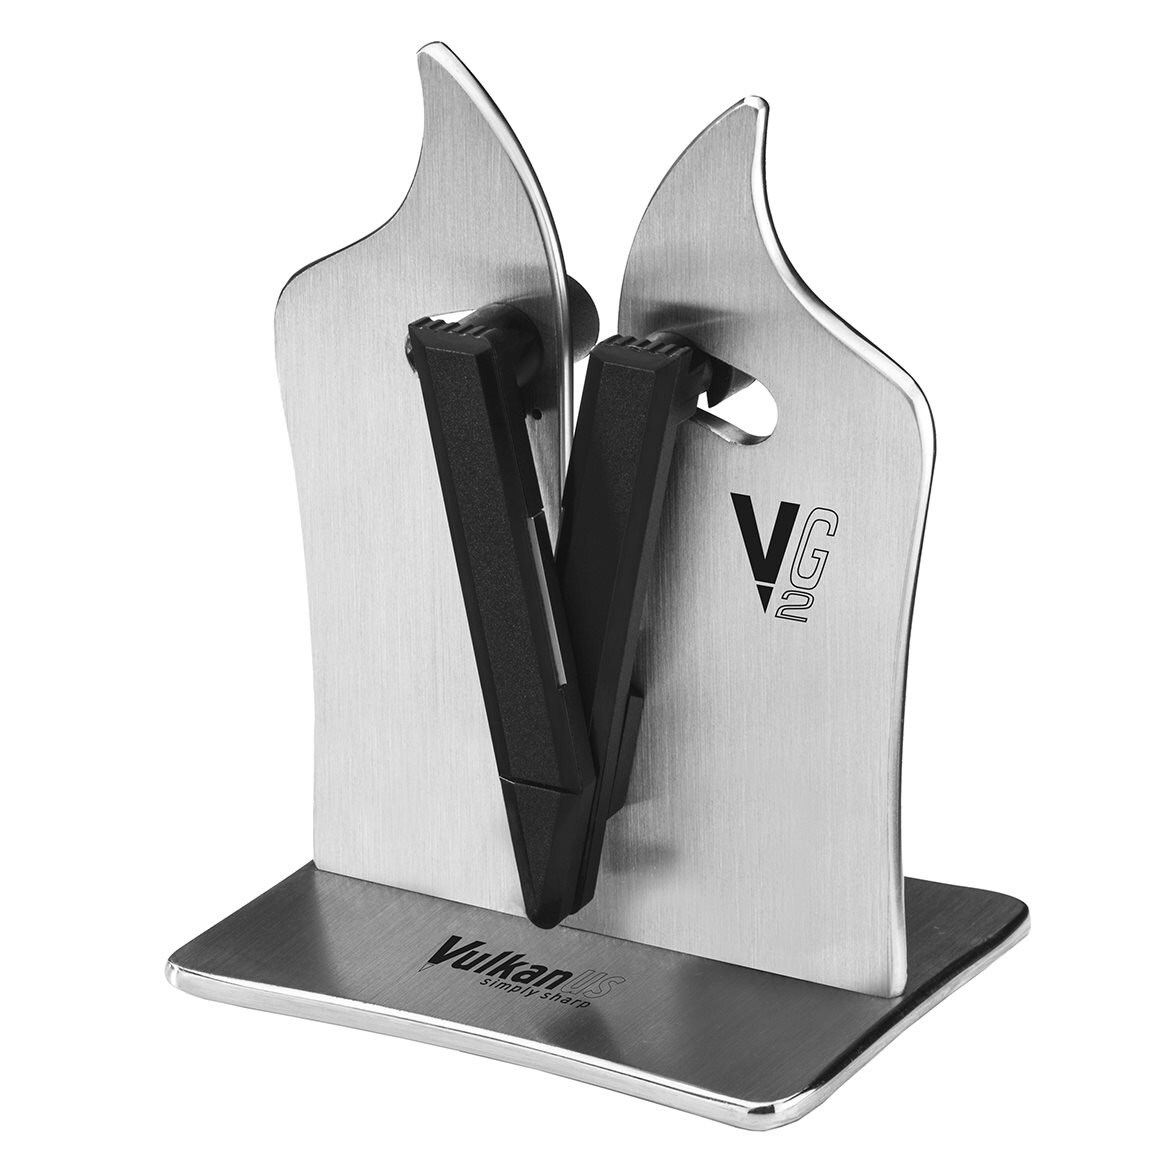 https://royaldesign.com/image/2/vulkanus-vulkanus-vg2-professional-knife-sharpener-0